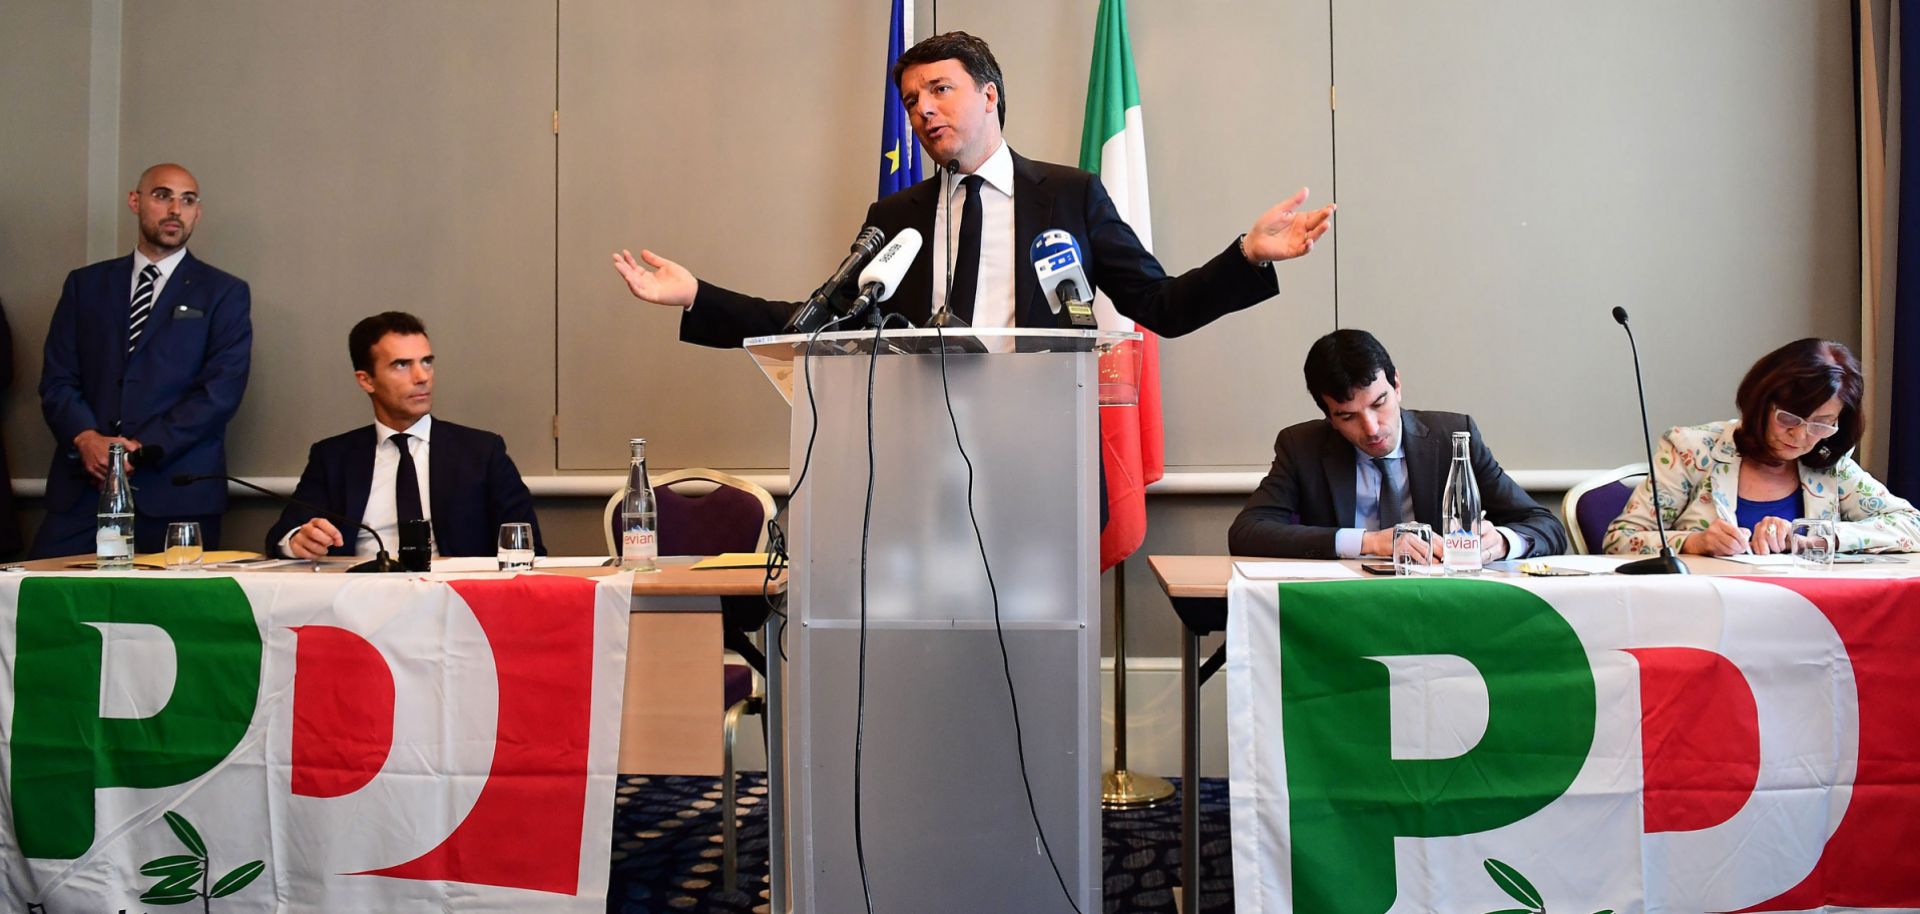 Former Italian Prime Minister Matteo Renzi